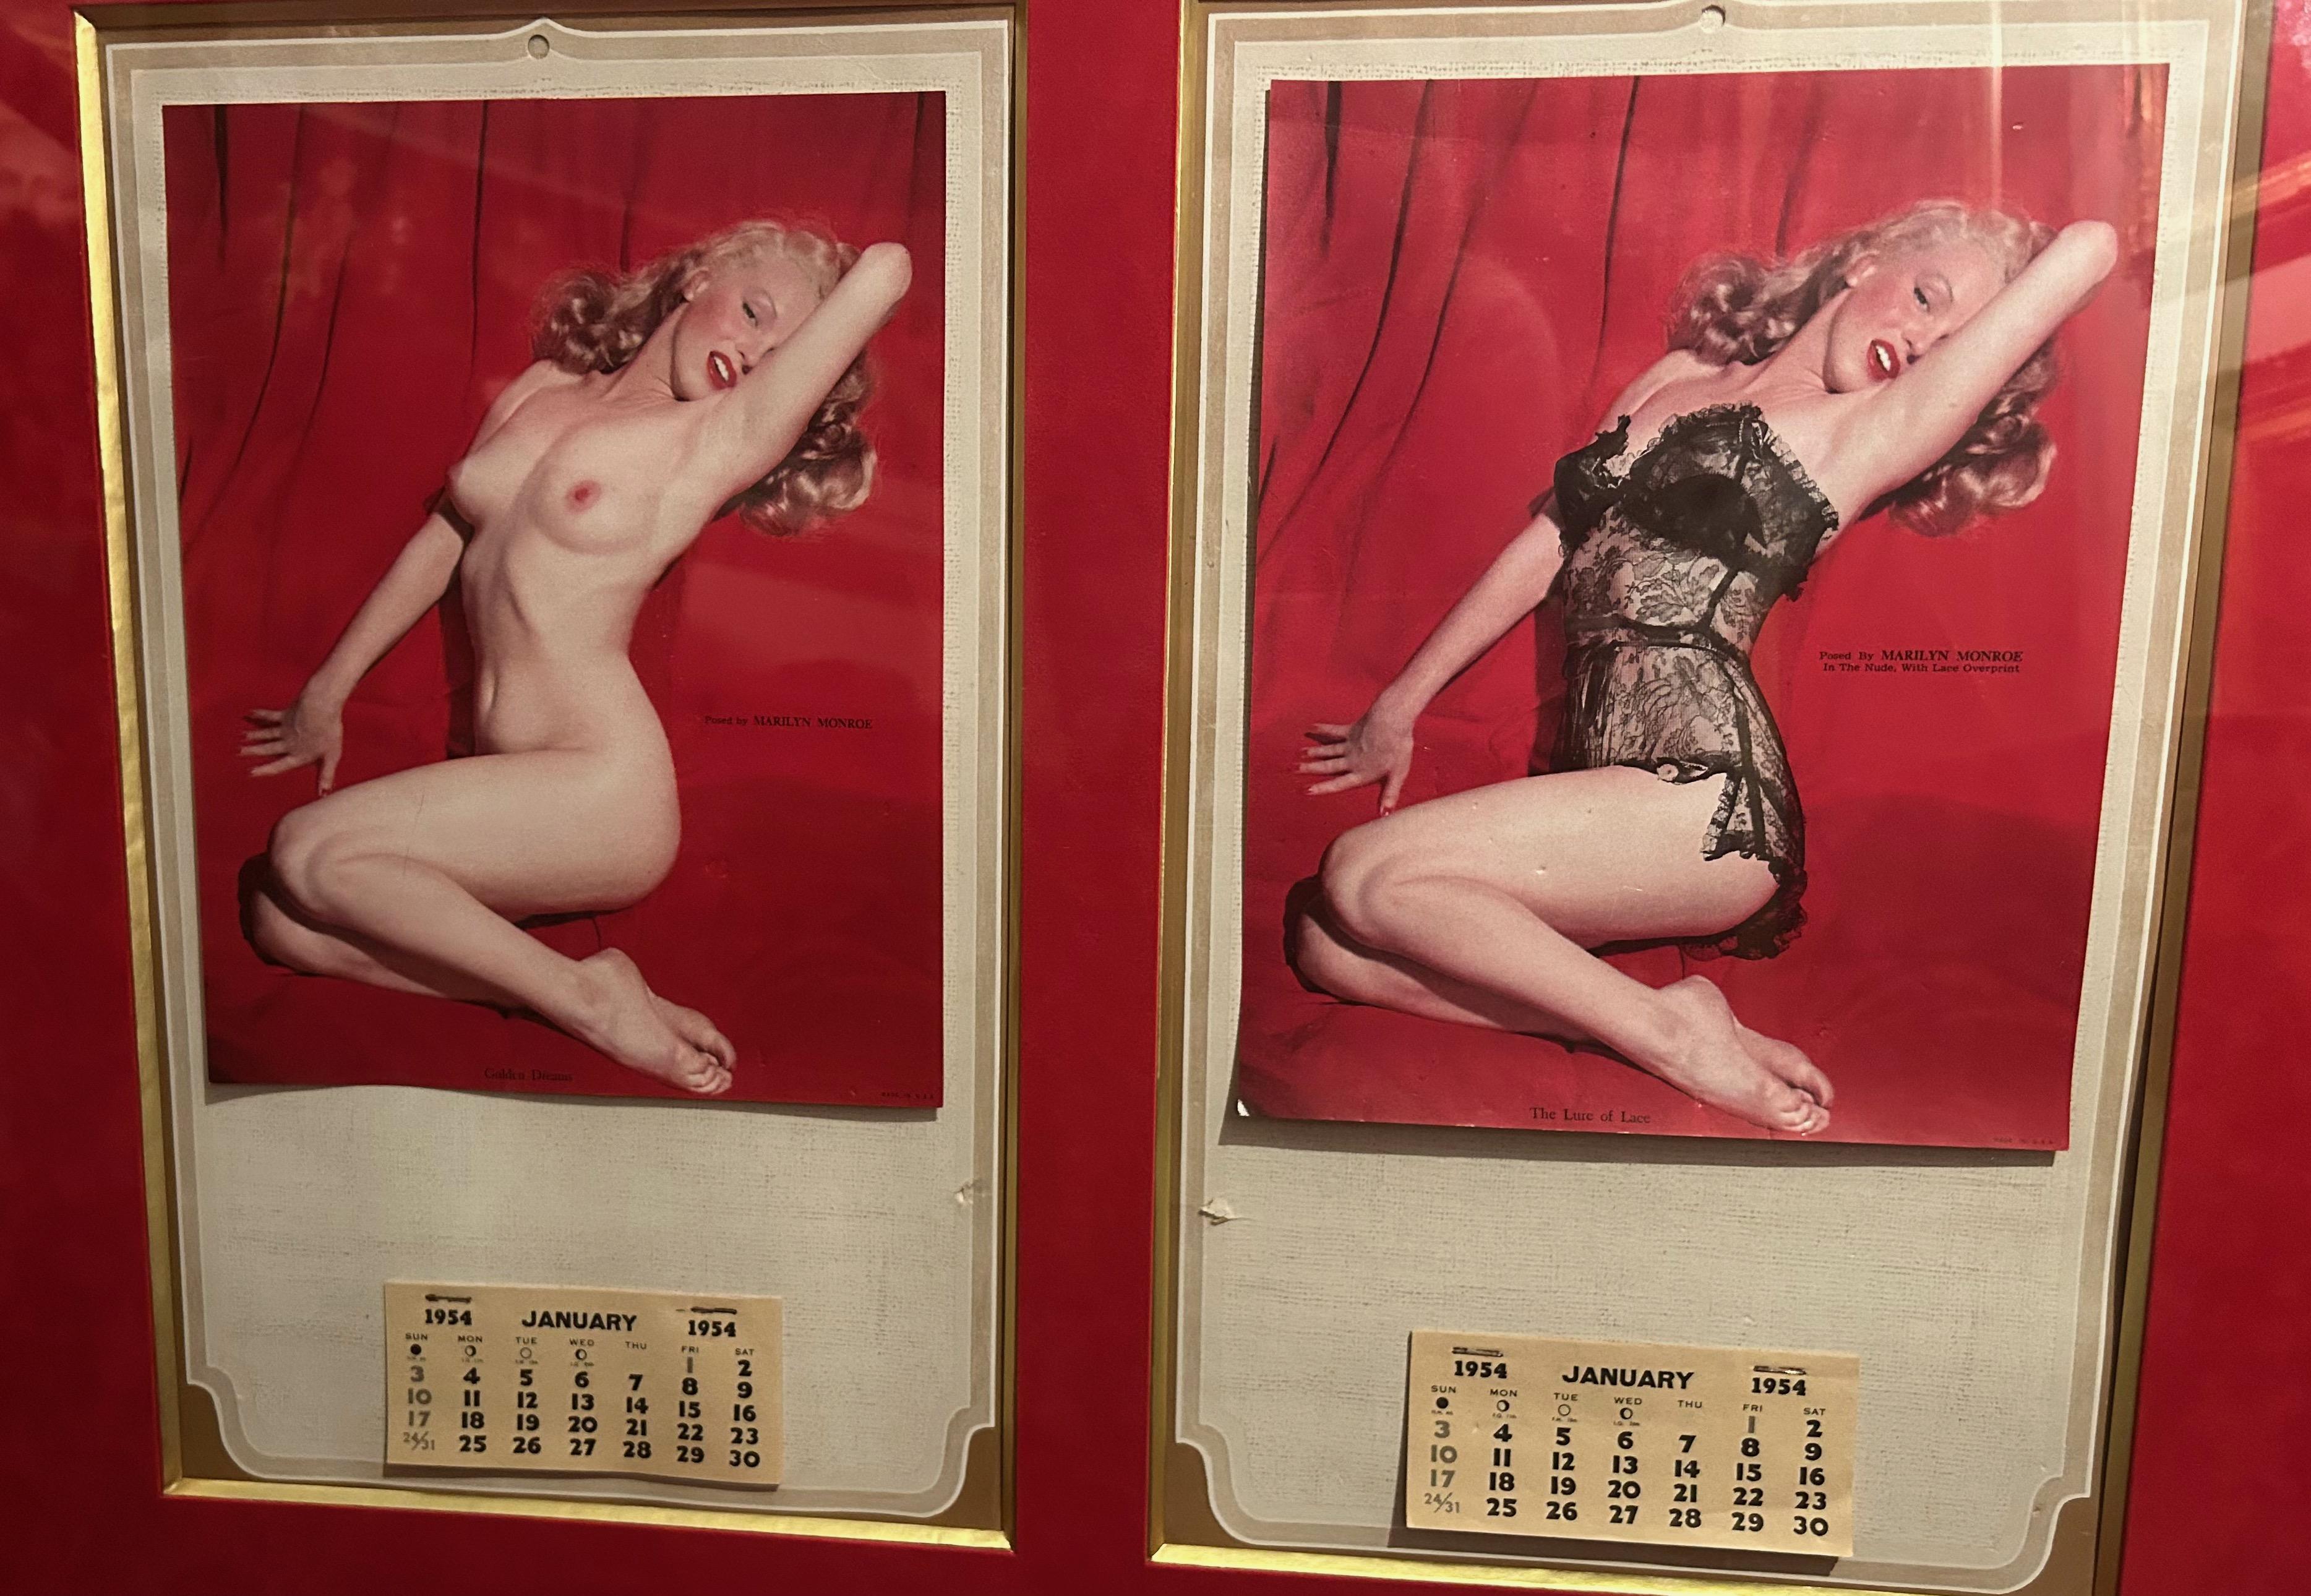 Marilyn Monroe Kalender 1954
Zwei Kalenderblätter aus dem Jahr 1954 mit Tageskalendern von Marilyn Monroe in nackter Pose und dann mit Hilfe einer speziellen Vorrichtung in feine Dessous gekleidet. 
Eines trägt die Aufschrift 